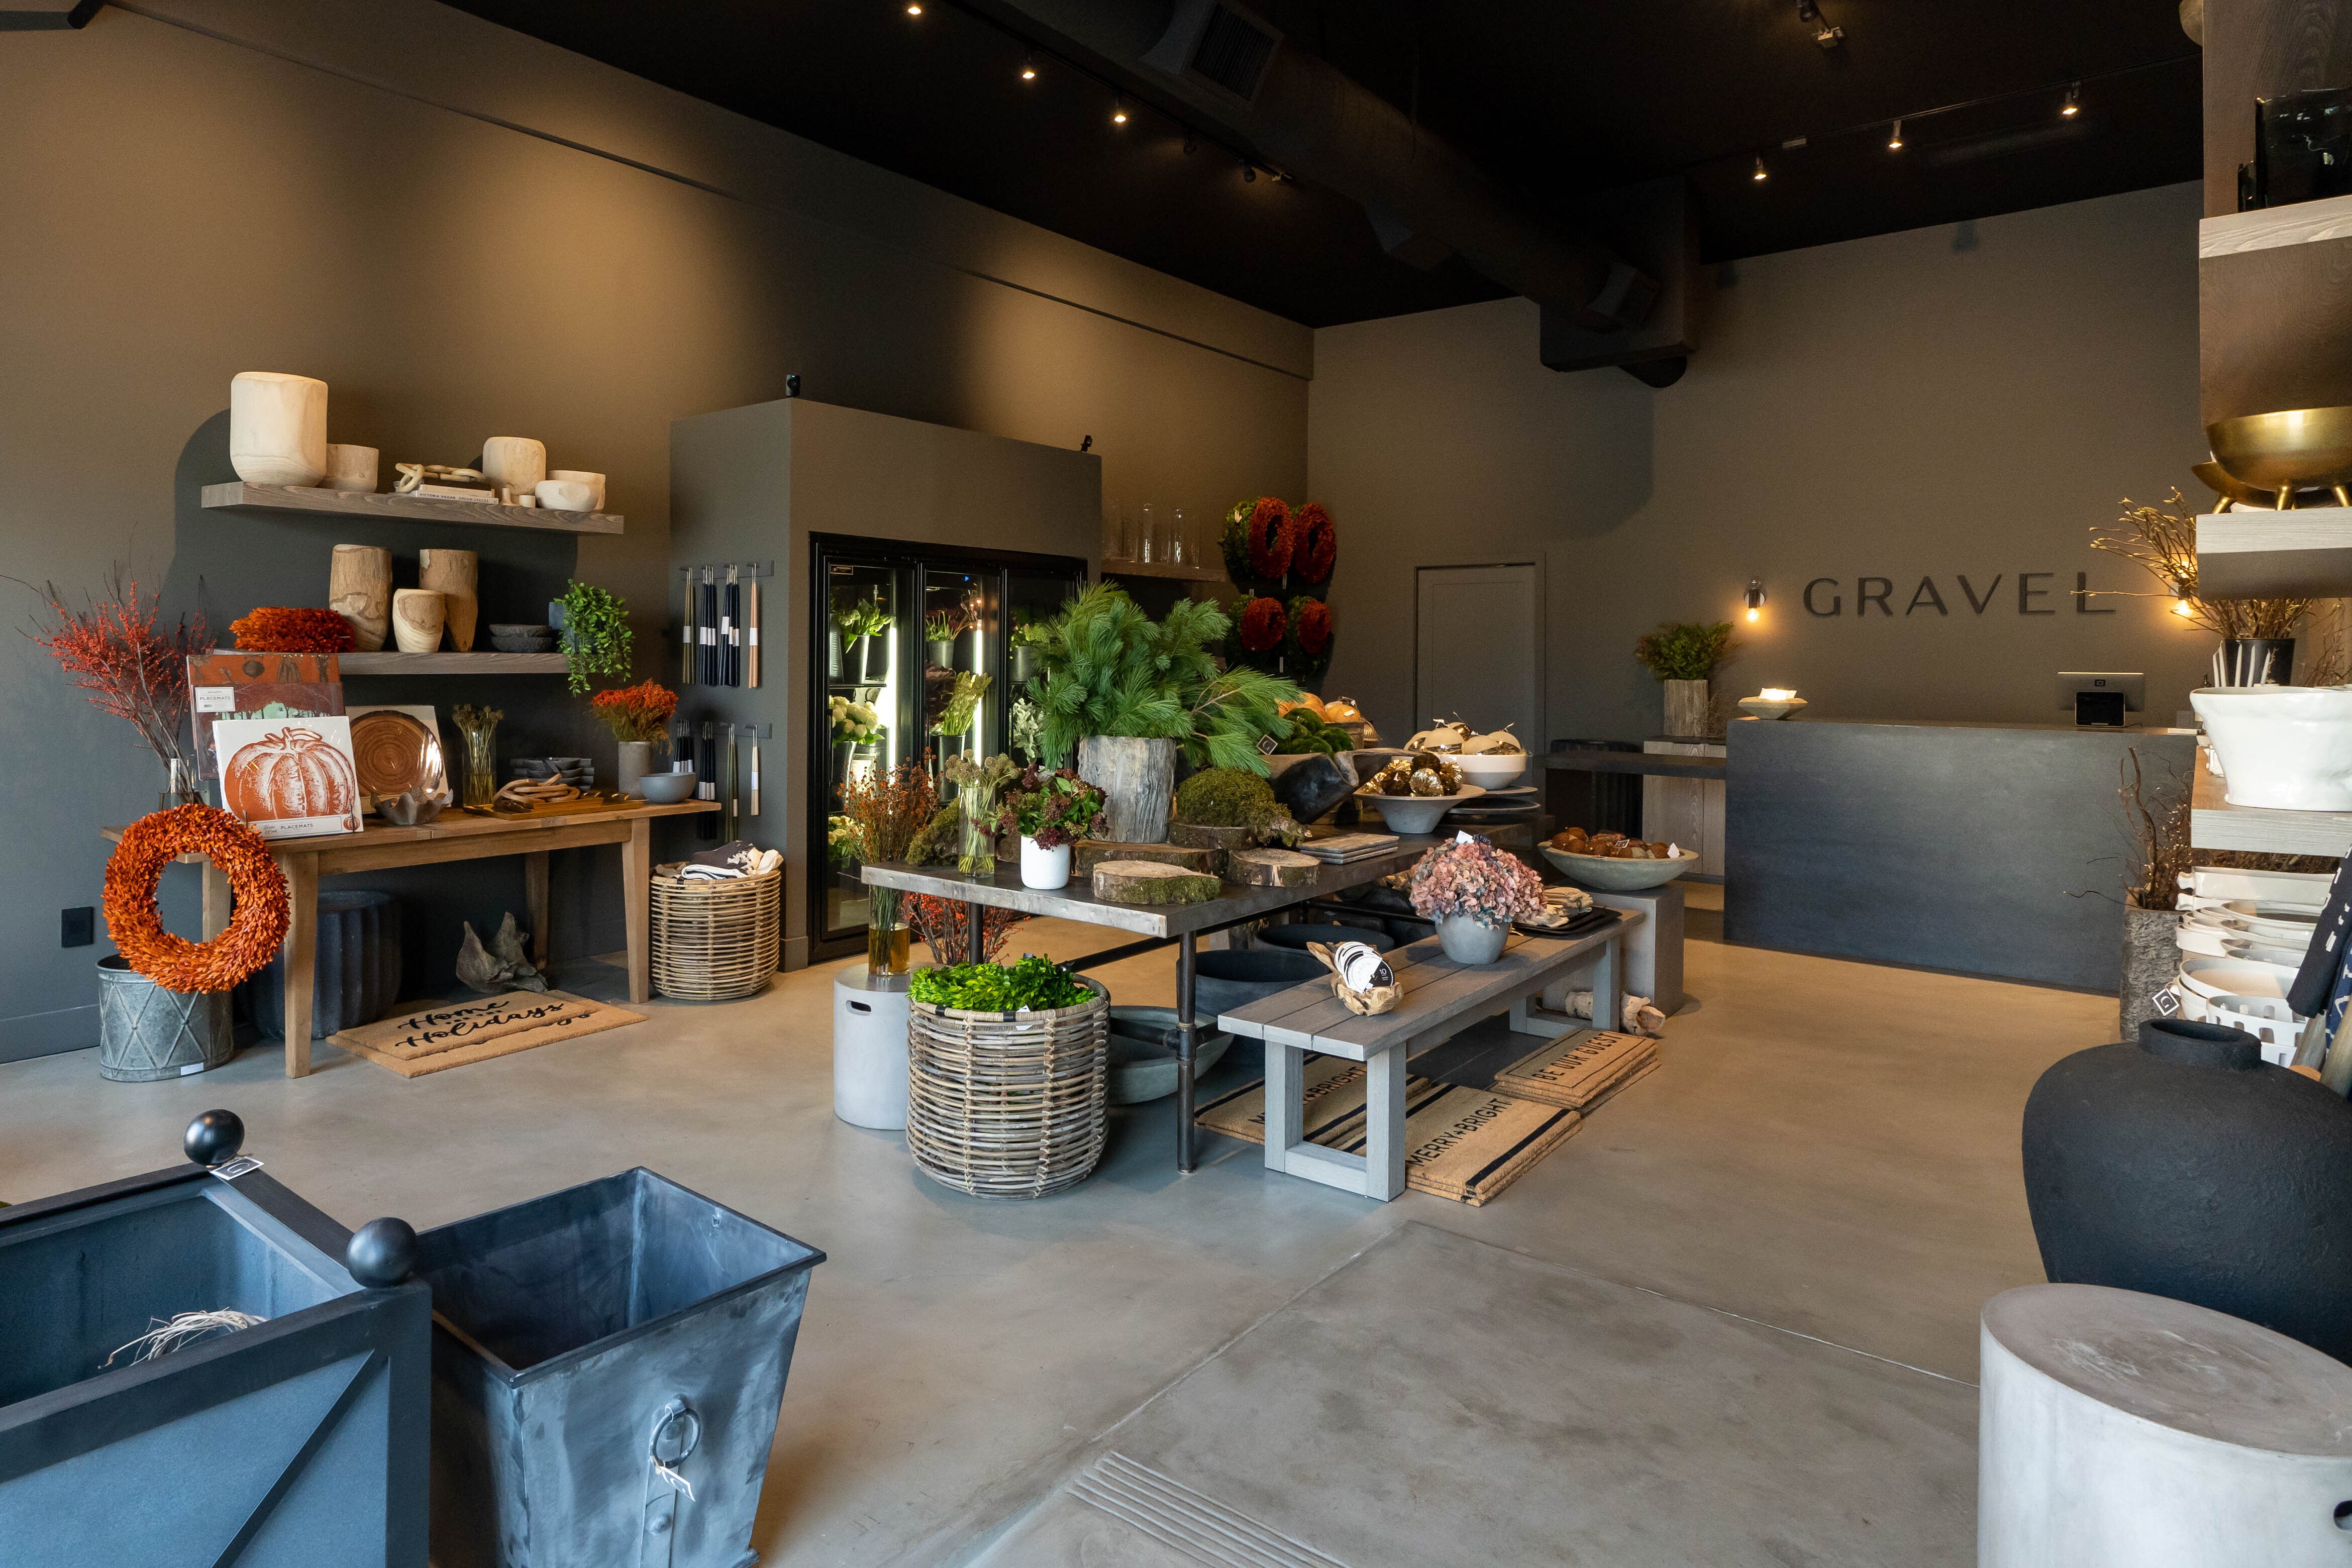 Gravel Flower Shop in Glendale CA 